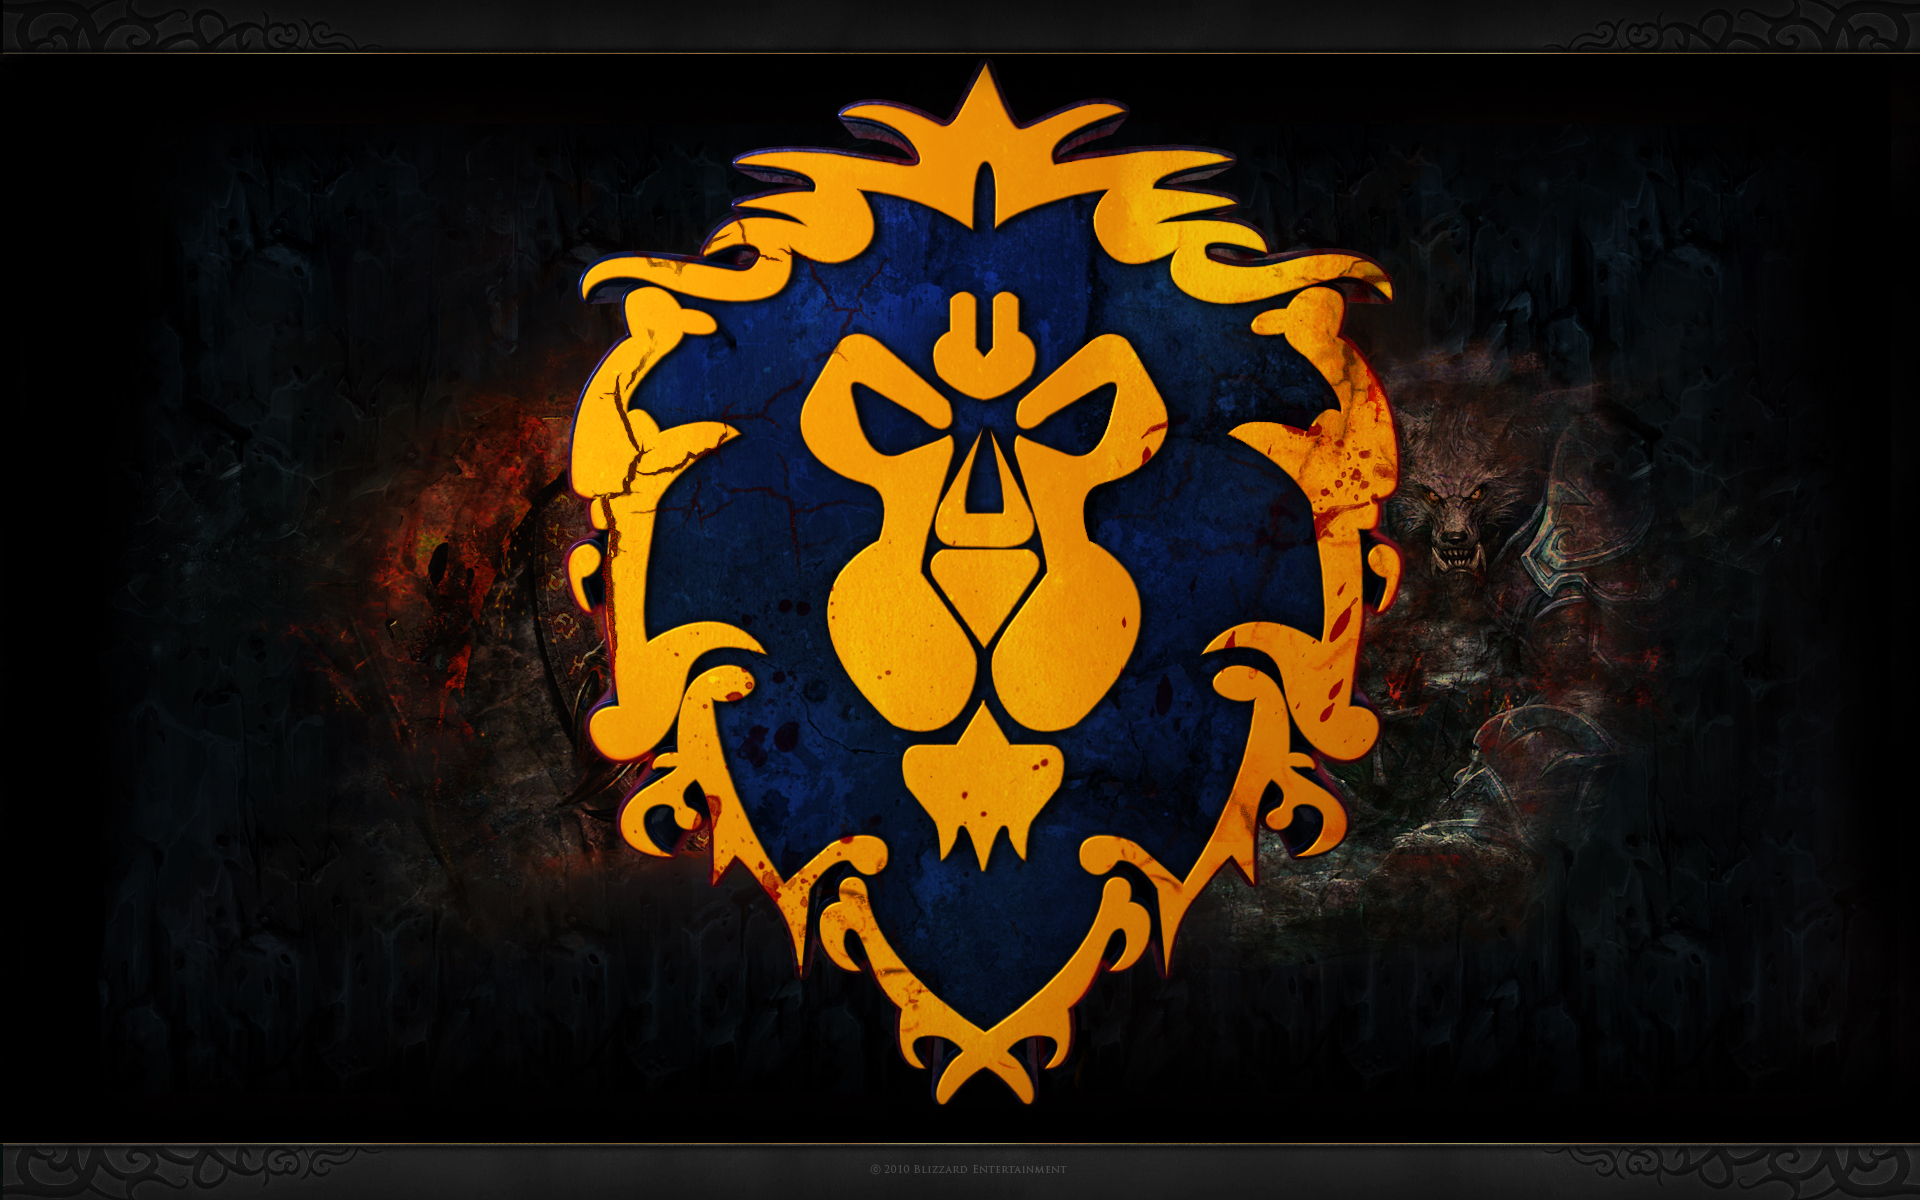 World of Warcraft, Alliance - desktop wallpaper